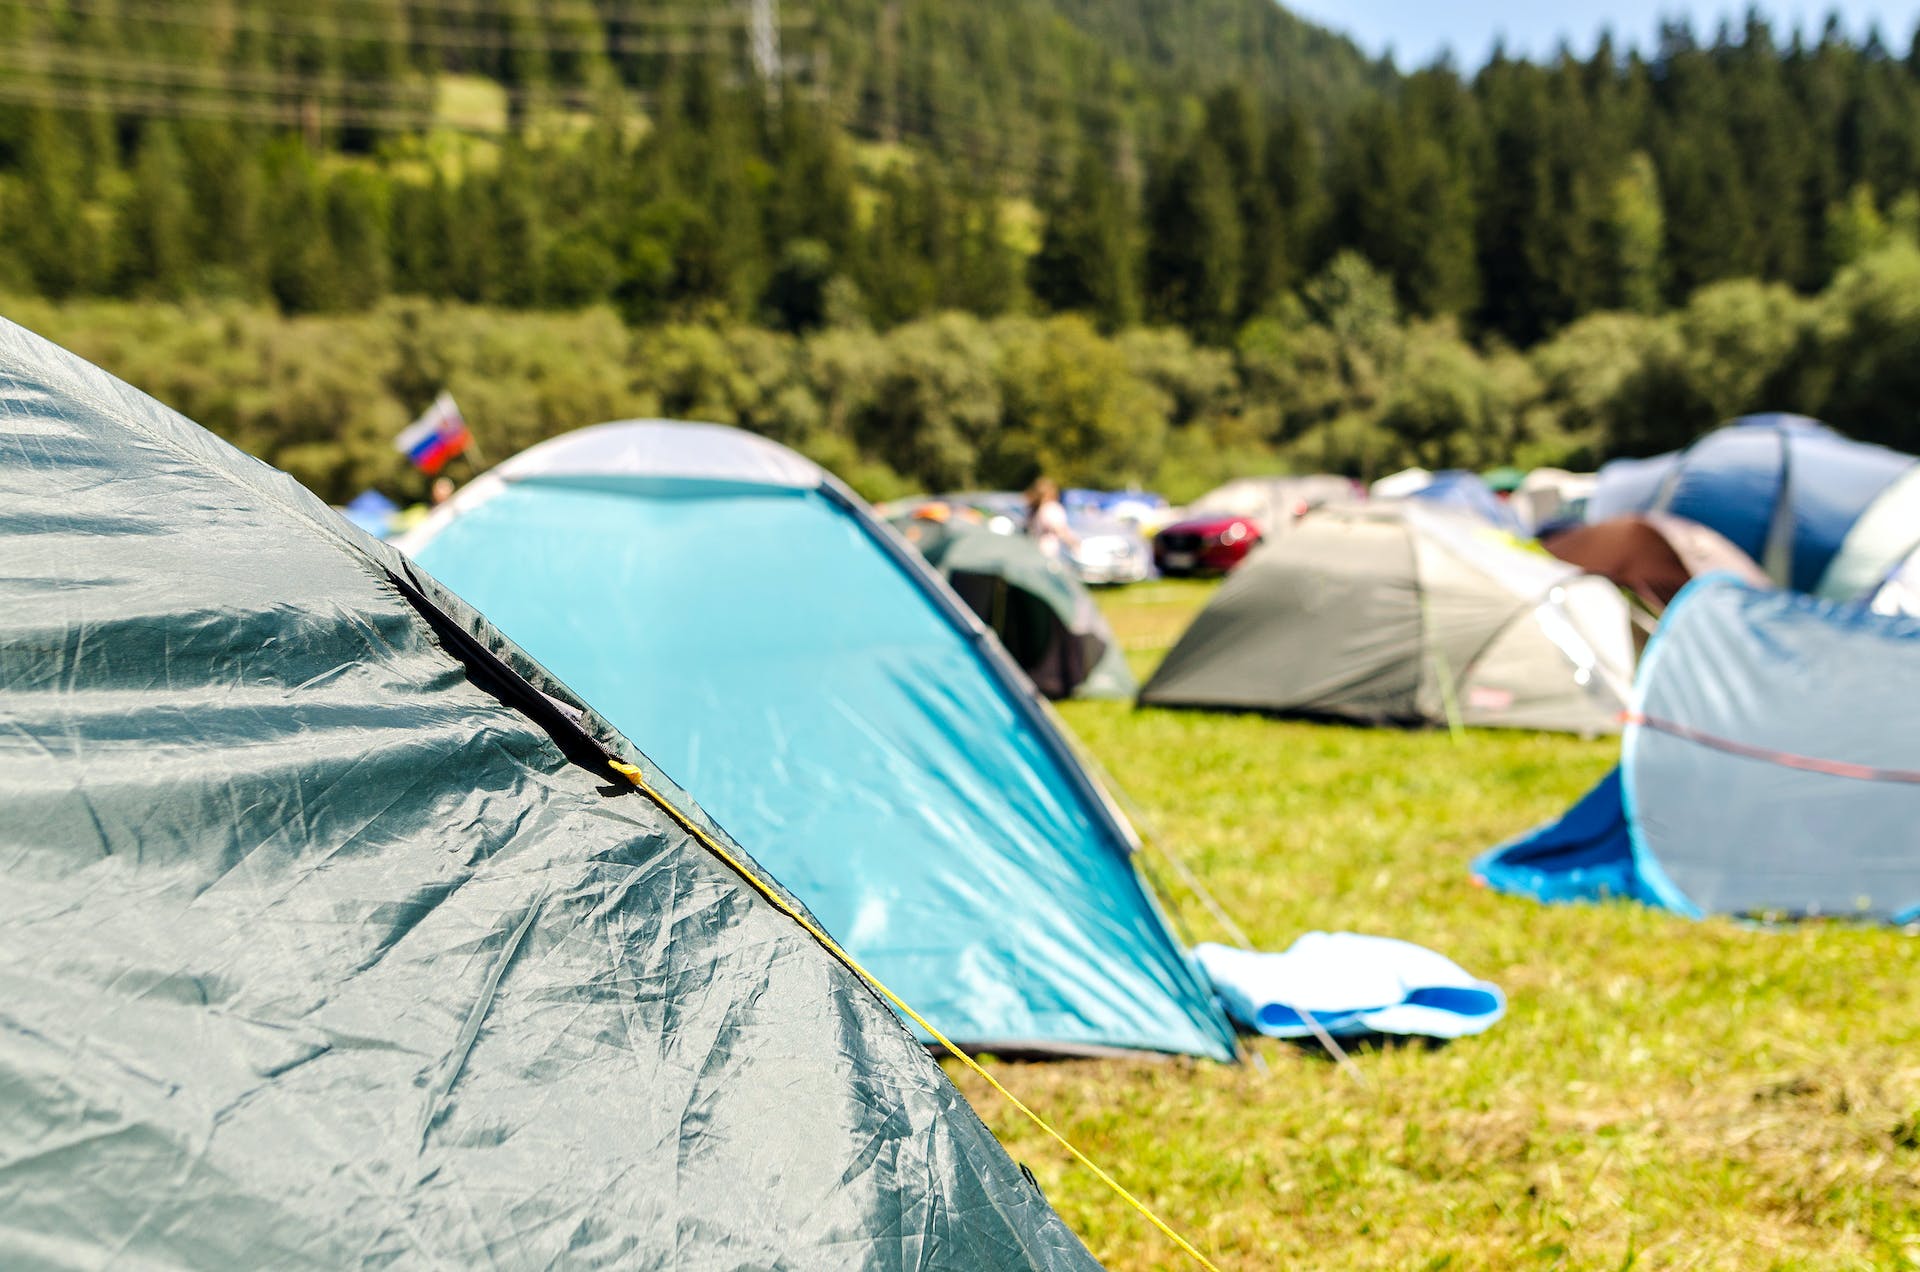 A campsite | Source: Pexels